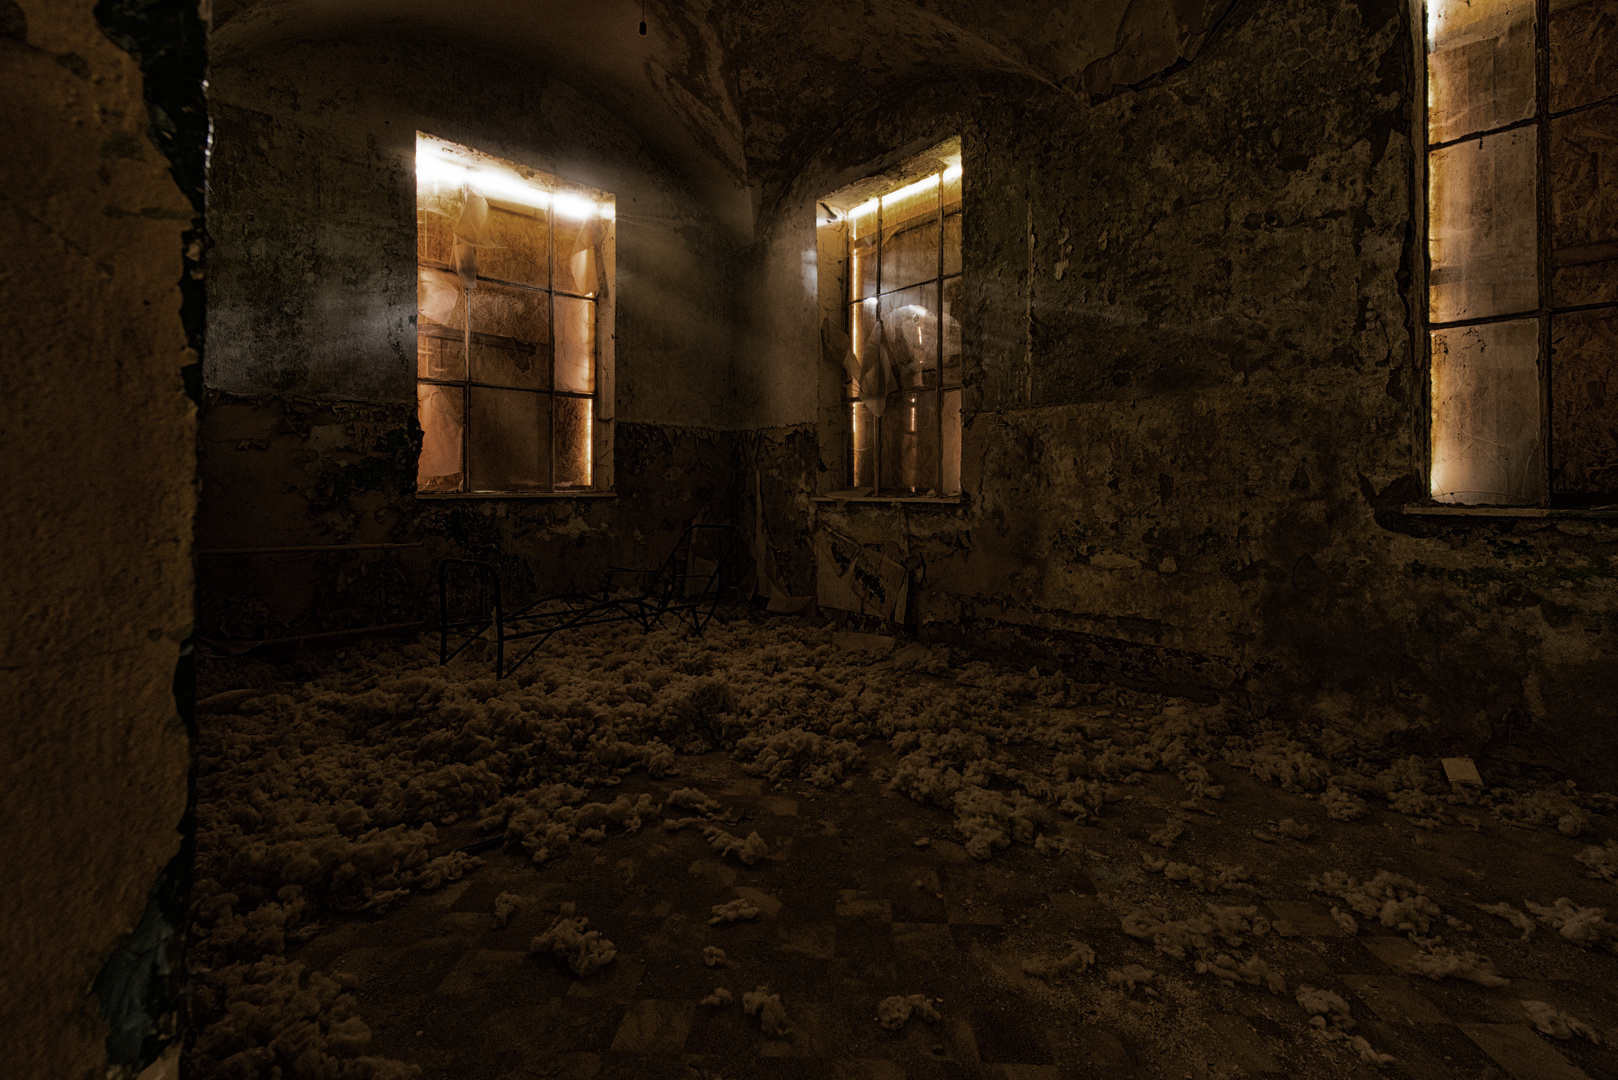 Beelitz - Darkroom